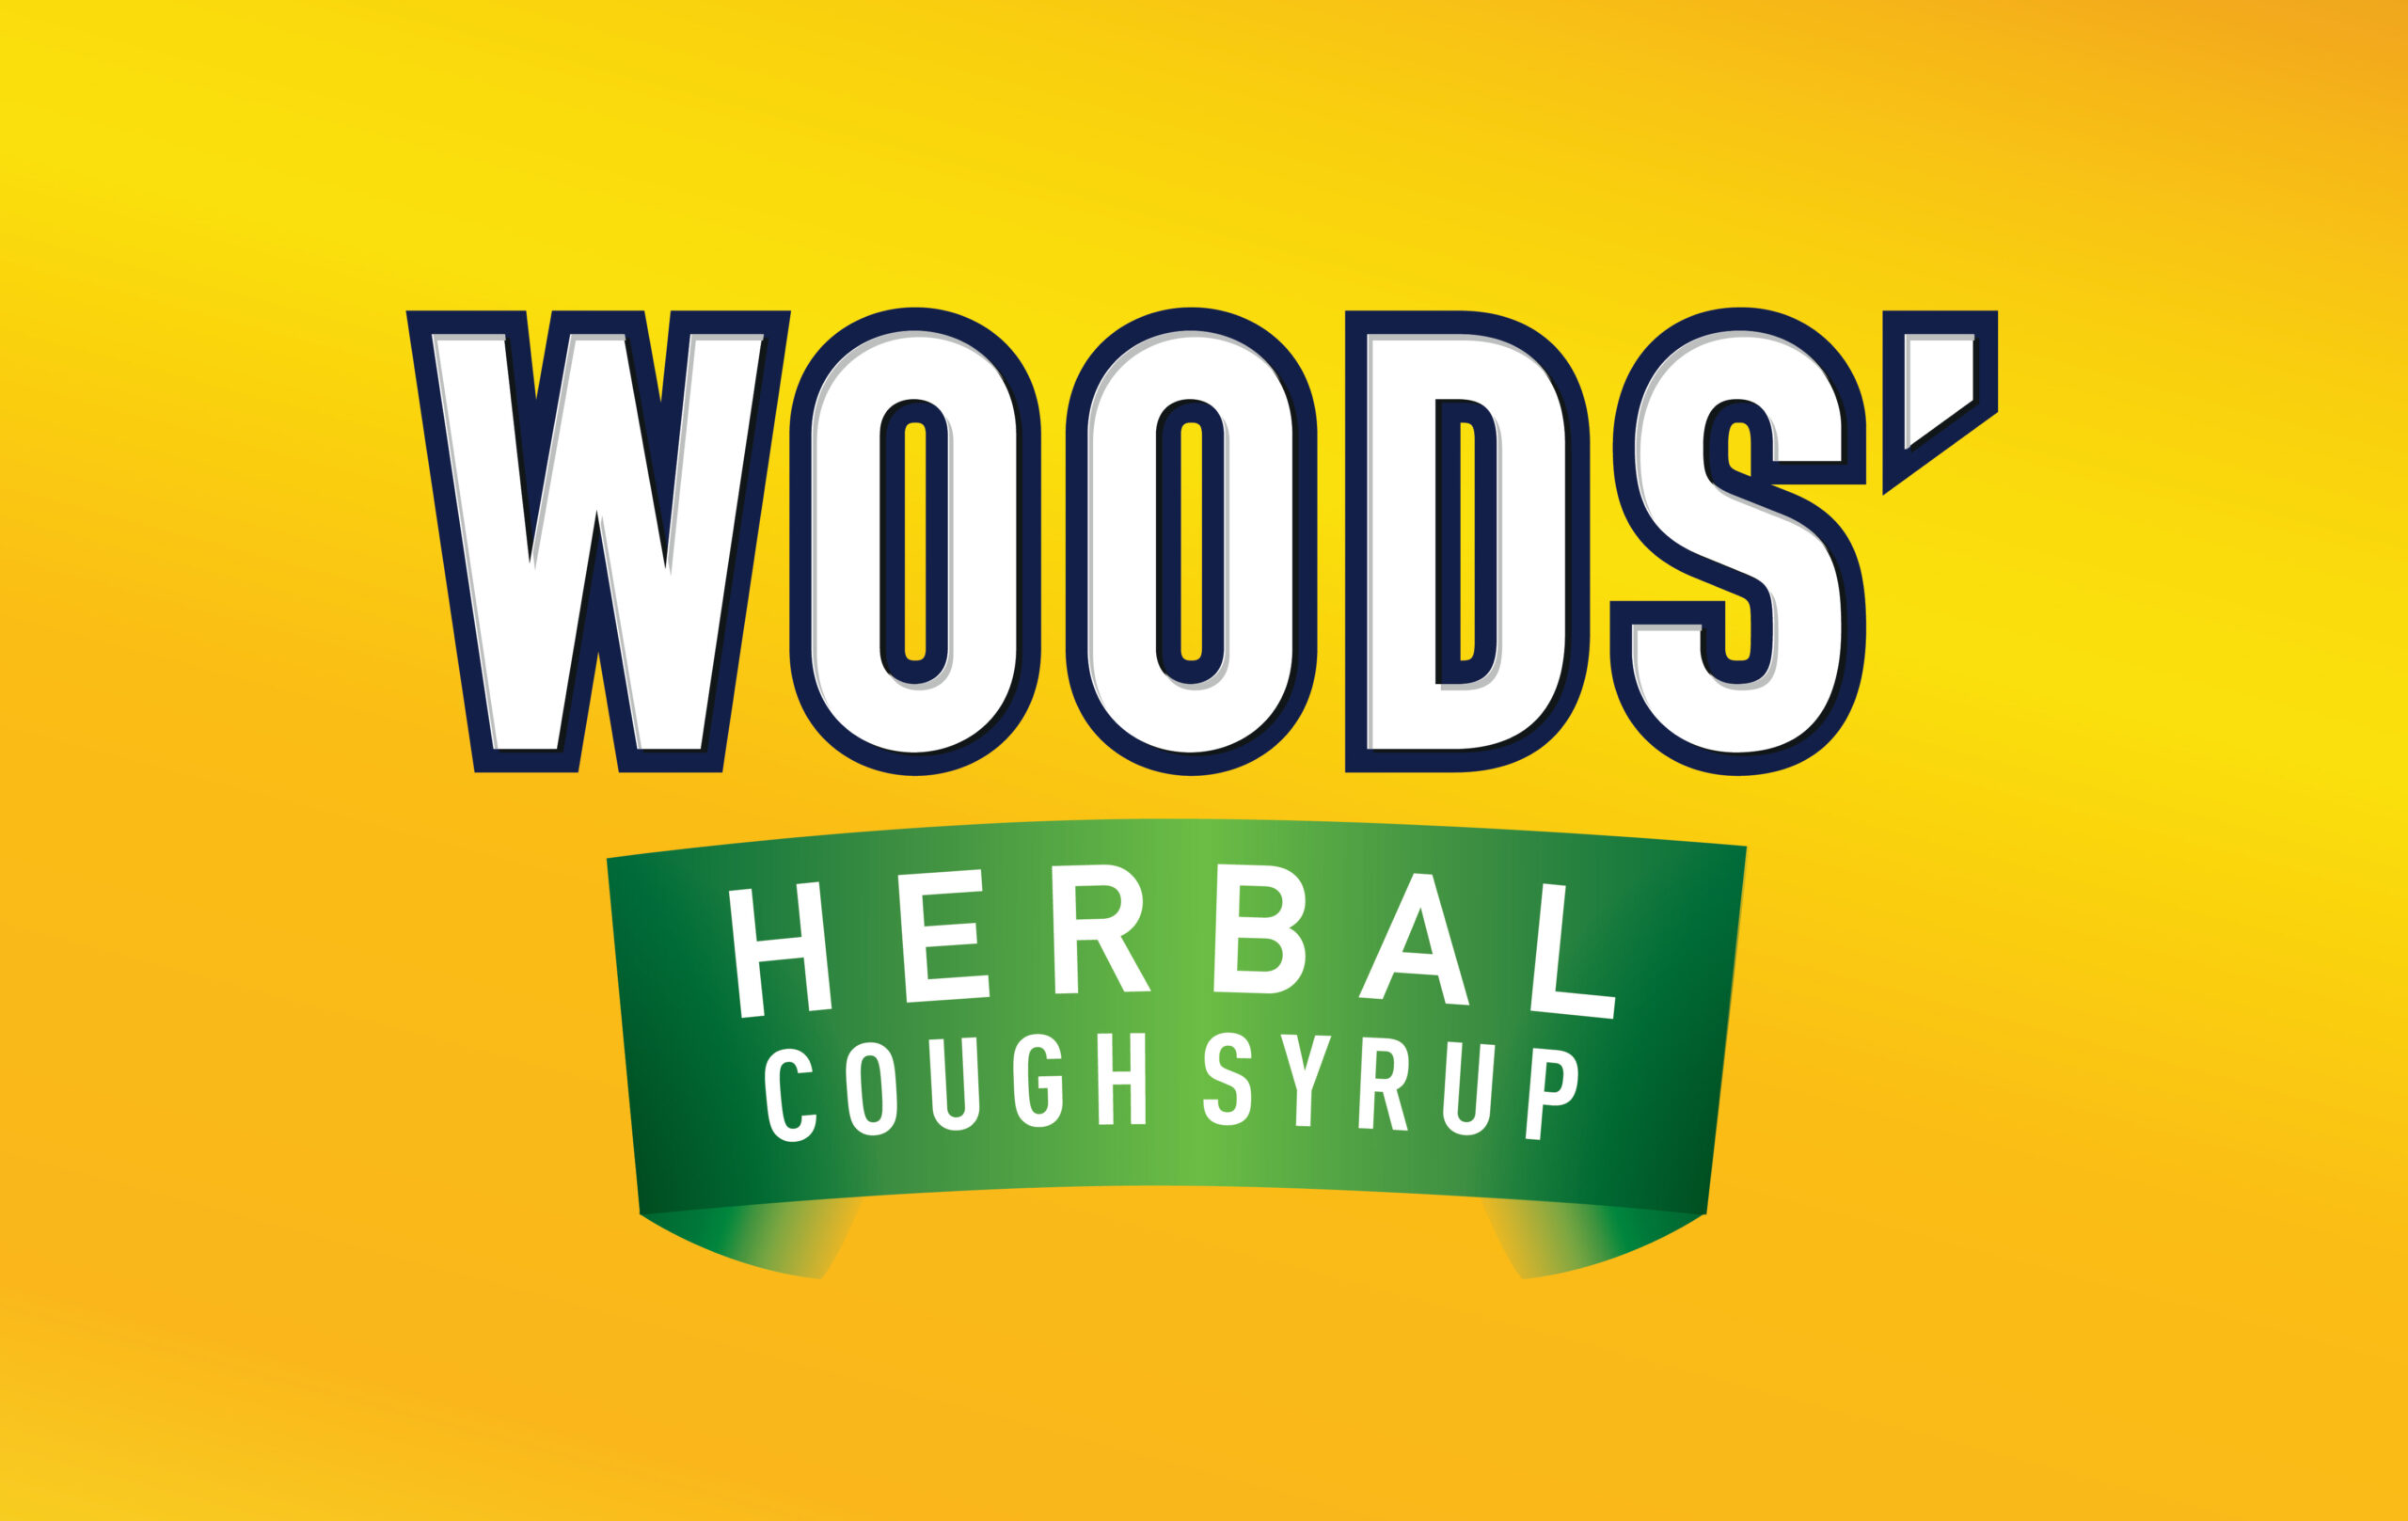 Woods' Herbal